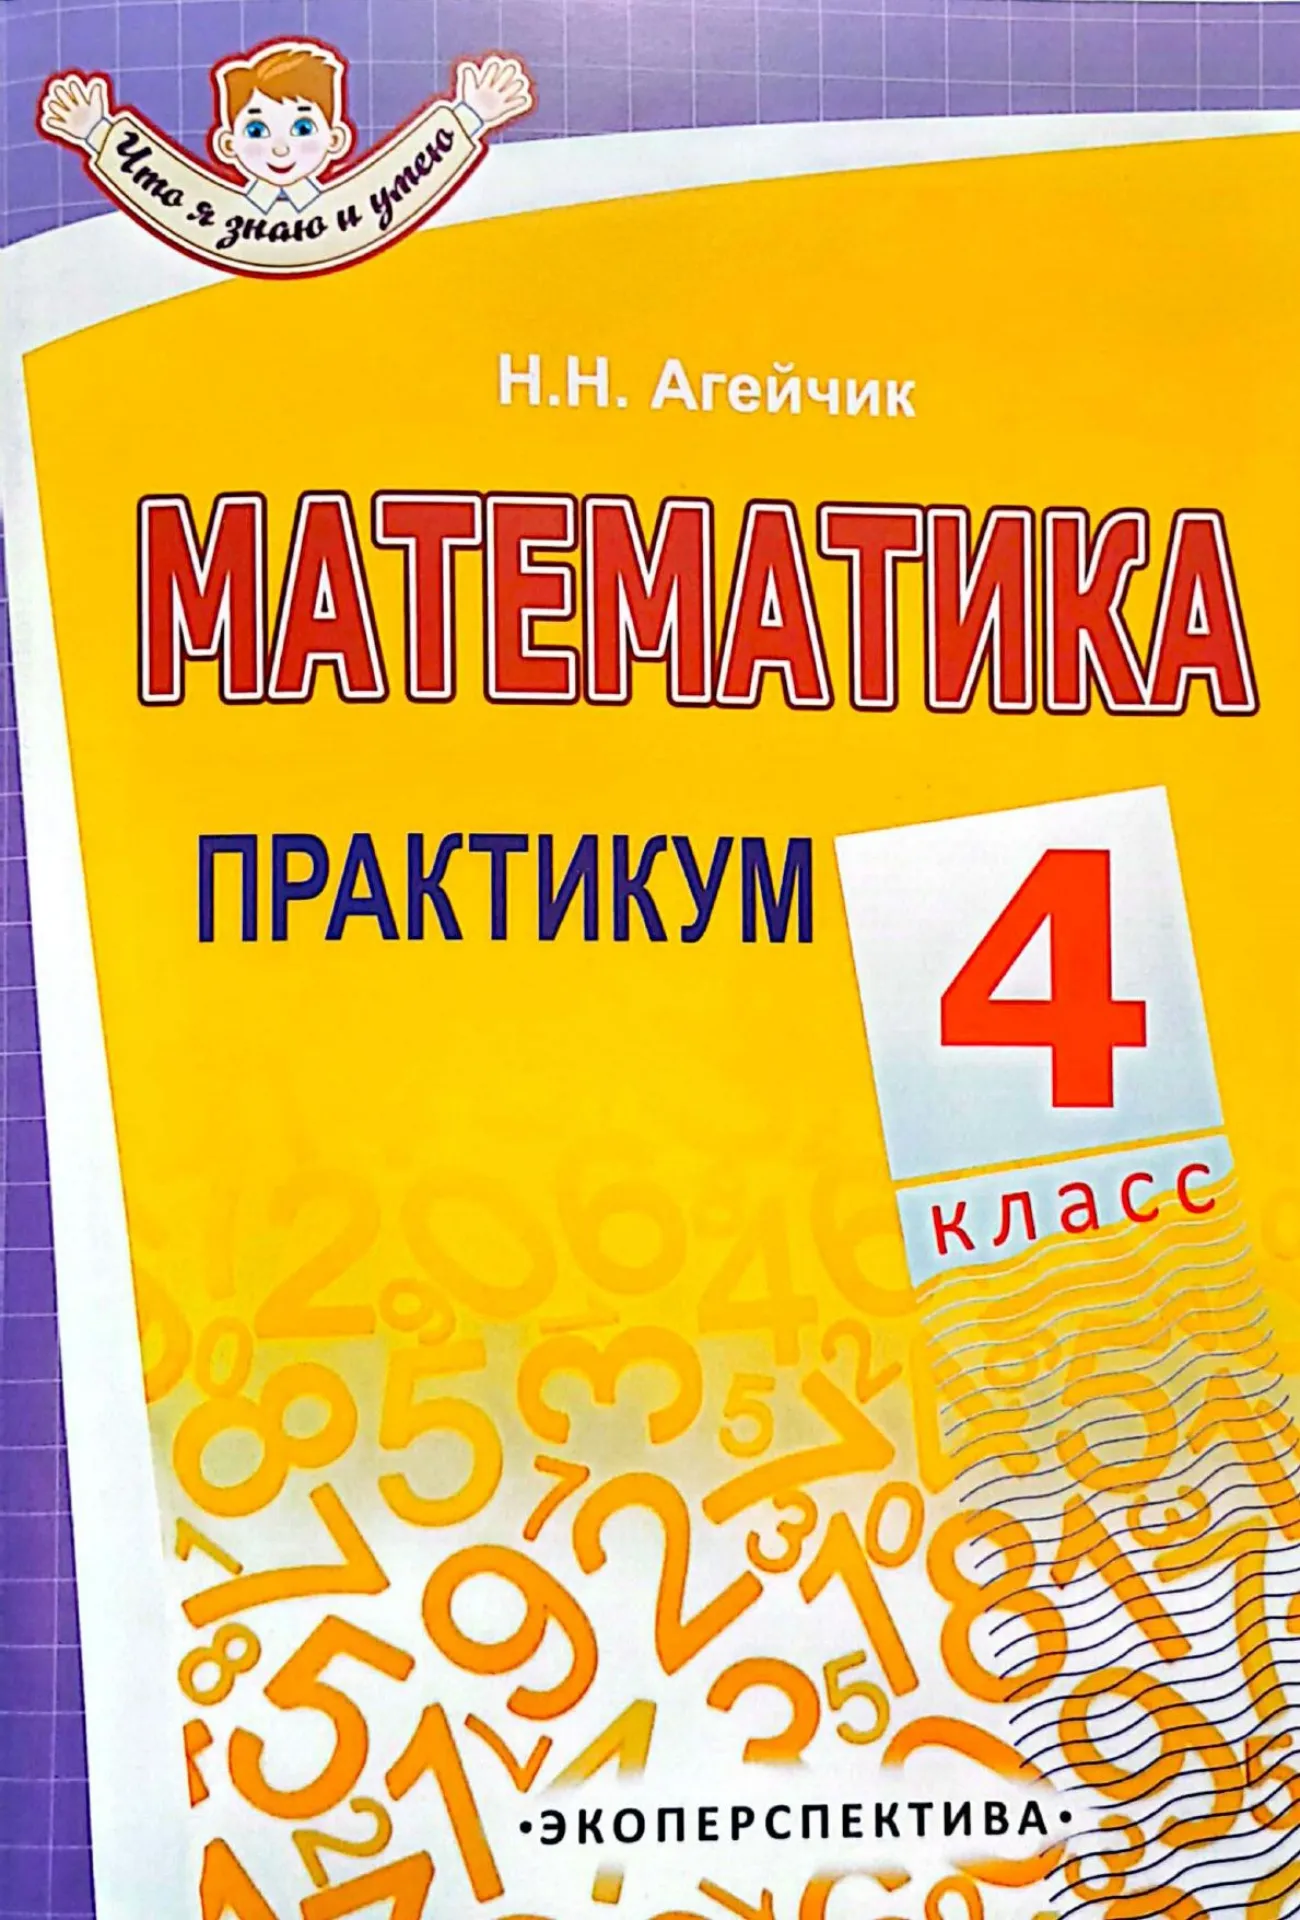 Математика, 4 класс, Практикум. Гриф, Агейчик Н.Н., Экоперспектива